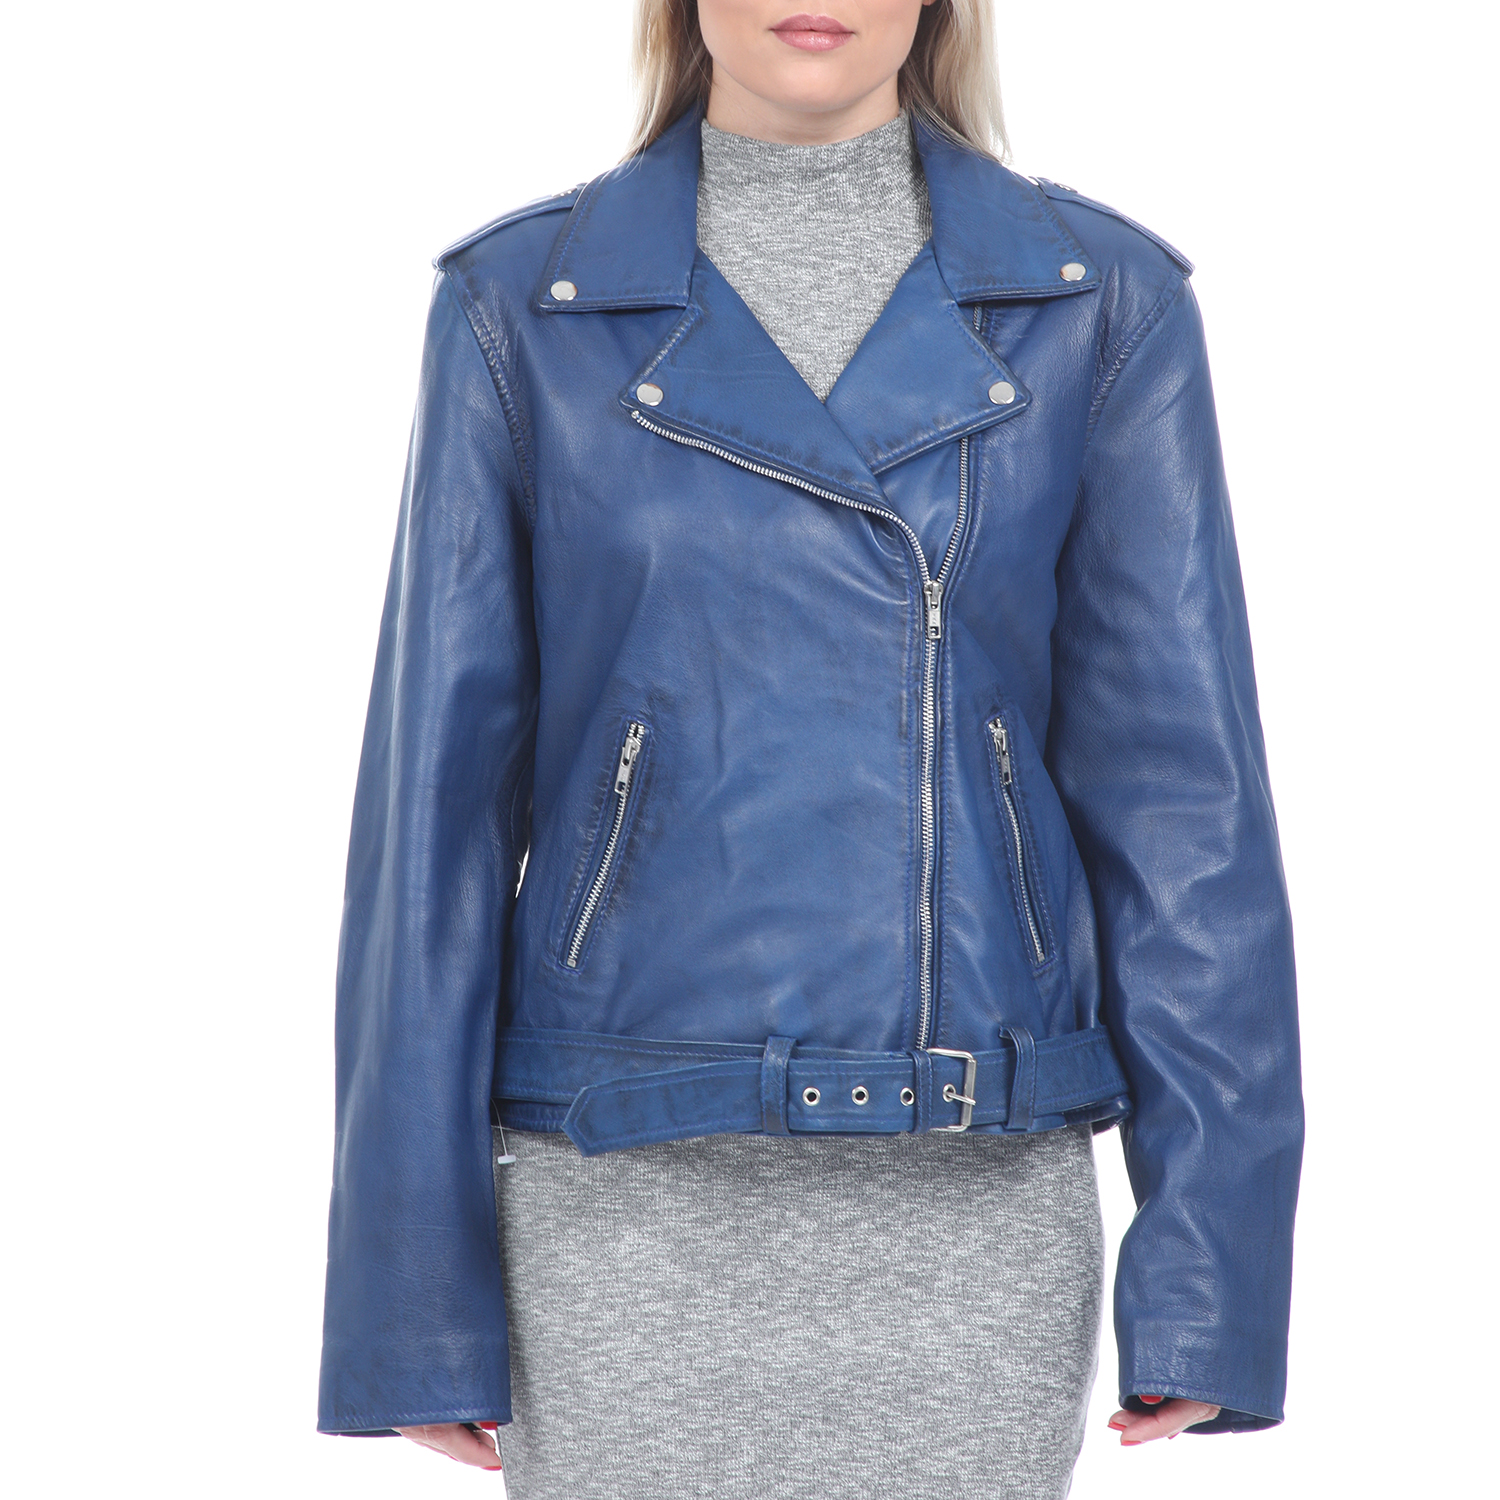 Γυναικεία/Ρούχα/Πανωφόρια/Δερμάτινα τζάκετς RITSELFURS - Γυναικείο δερμάτινο jacket RITSELFURS μπλε